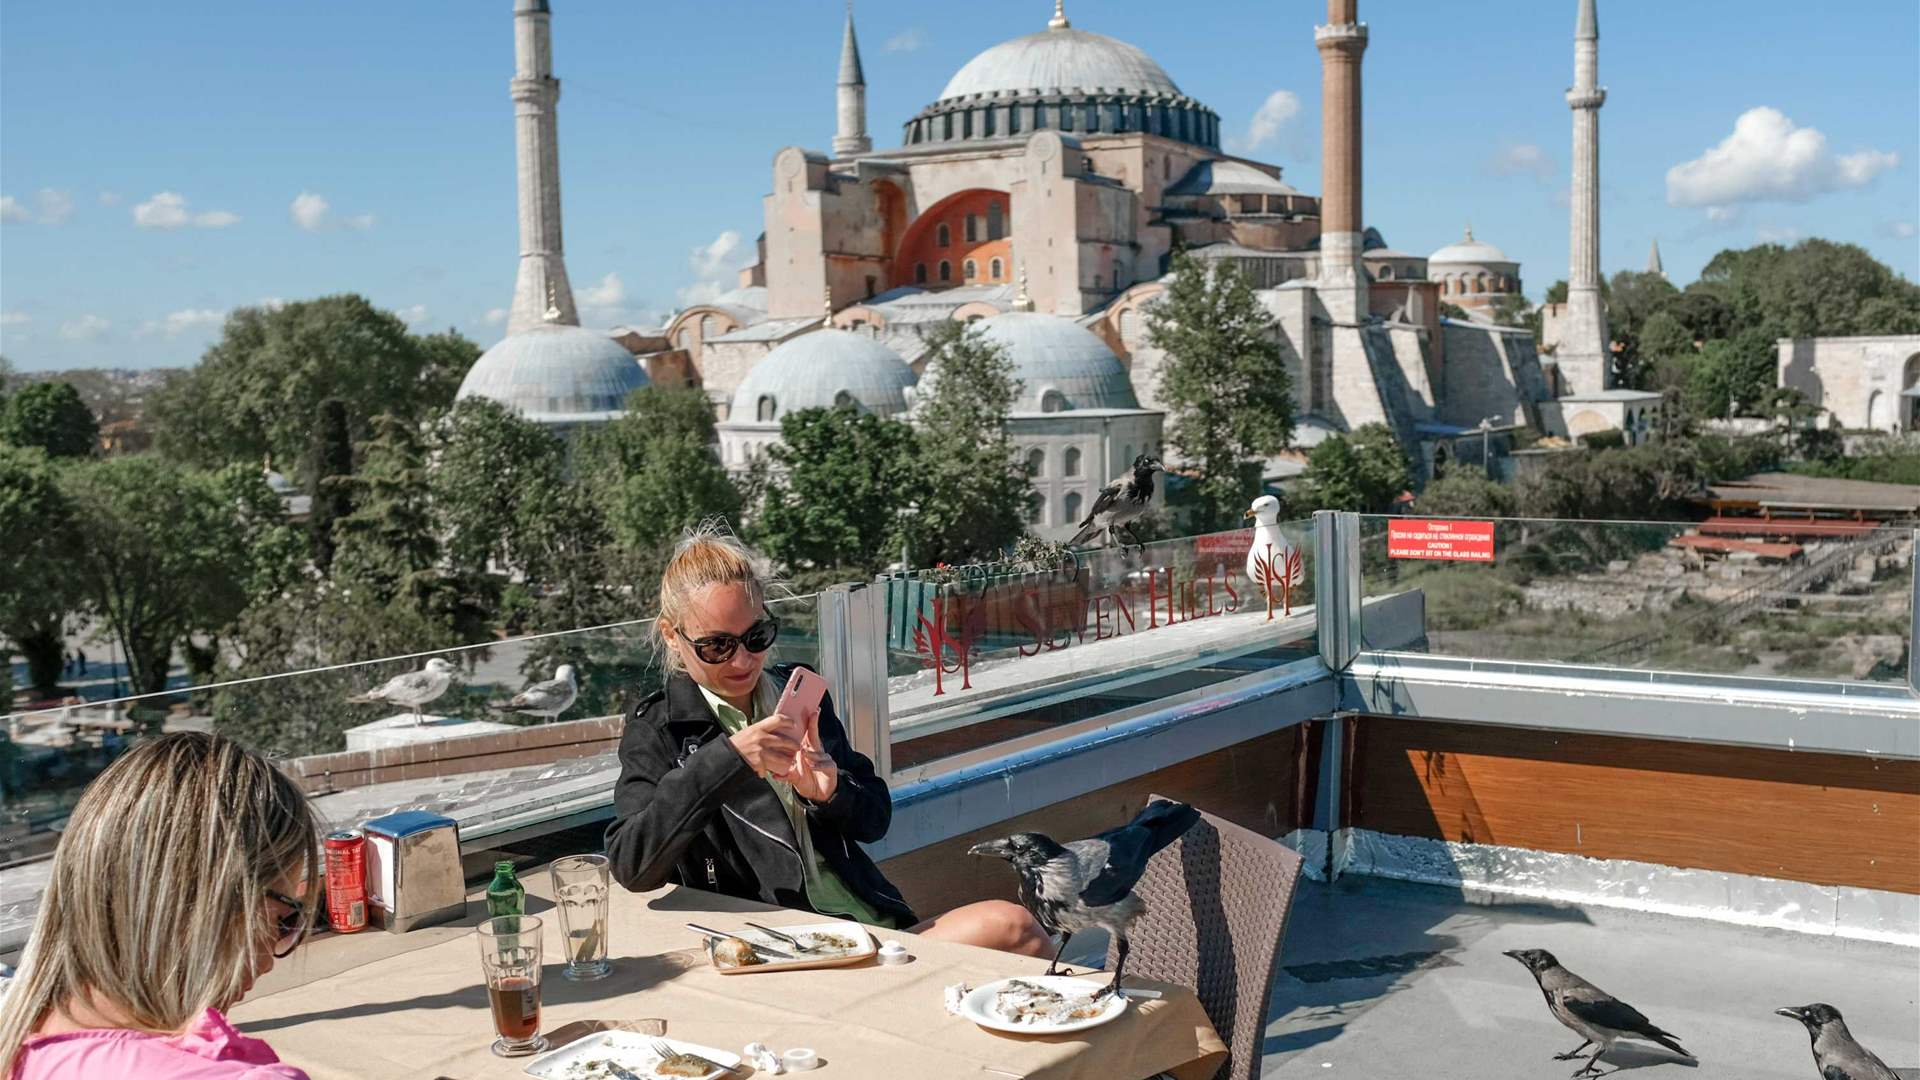  ارتفاع عدد الزوار الأجانب في تركيا 